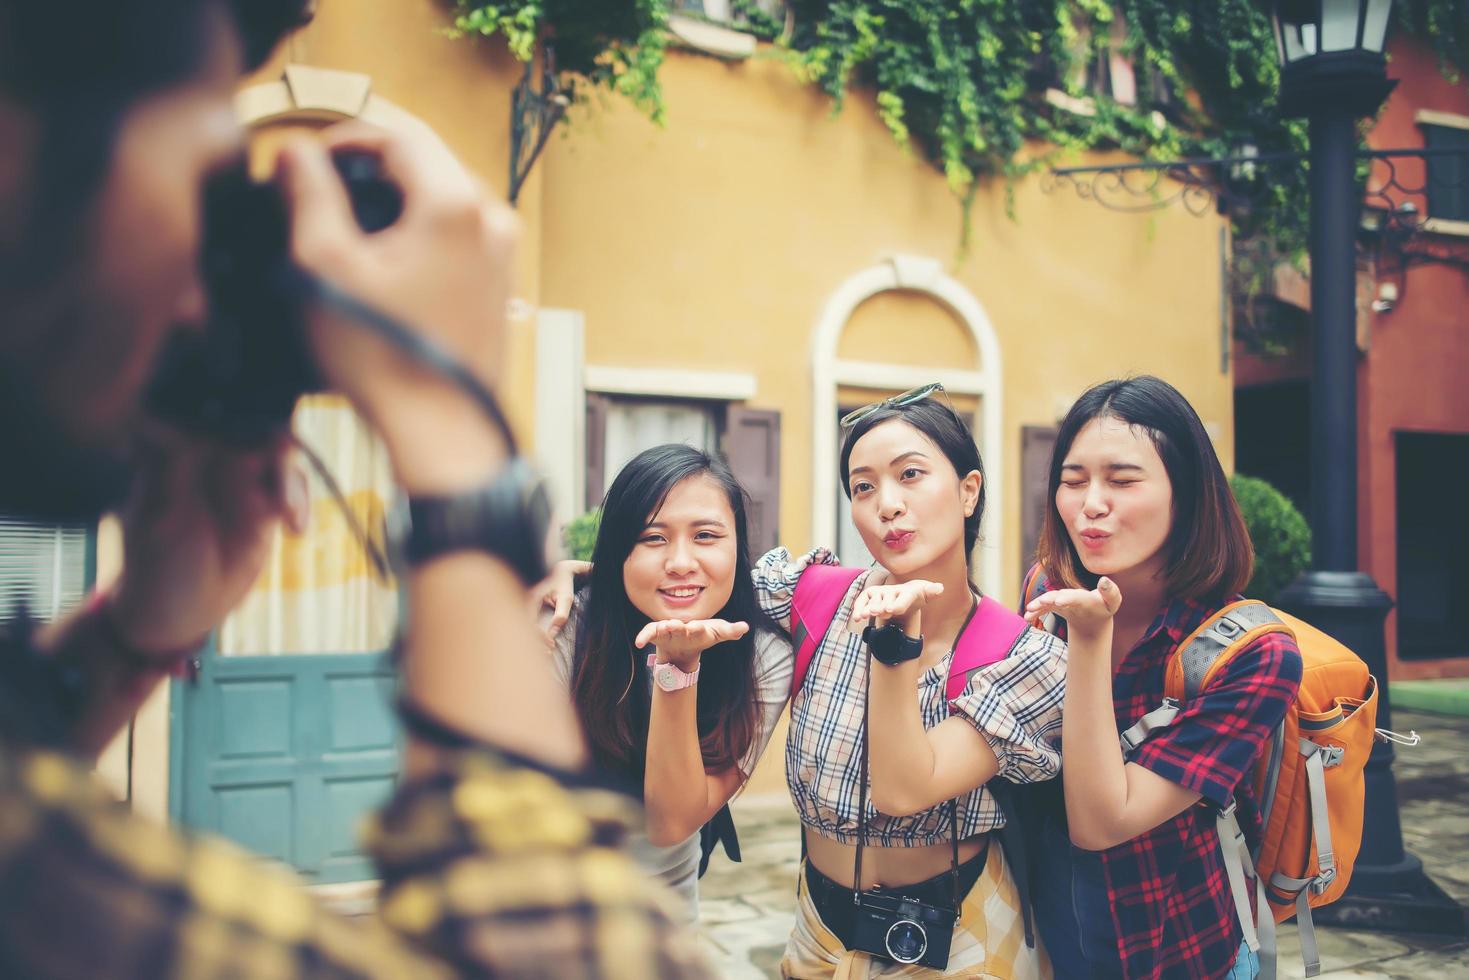 gruppo di amici felici che prendono selfie insieme in un'area urbana foto